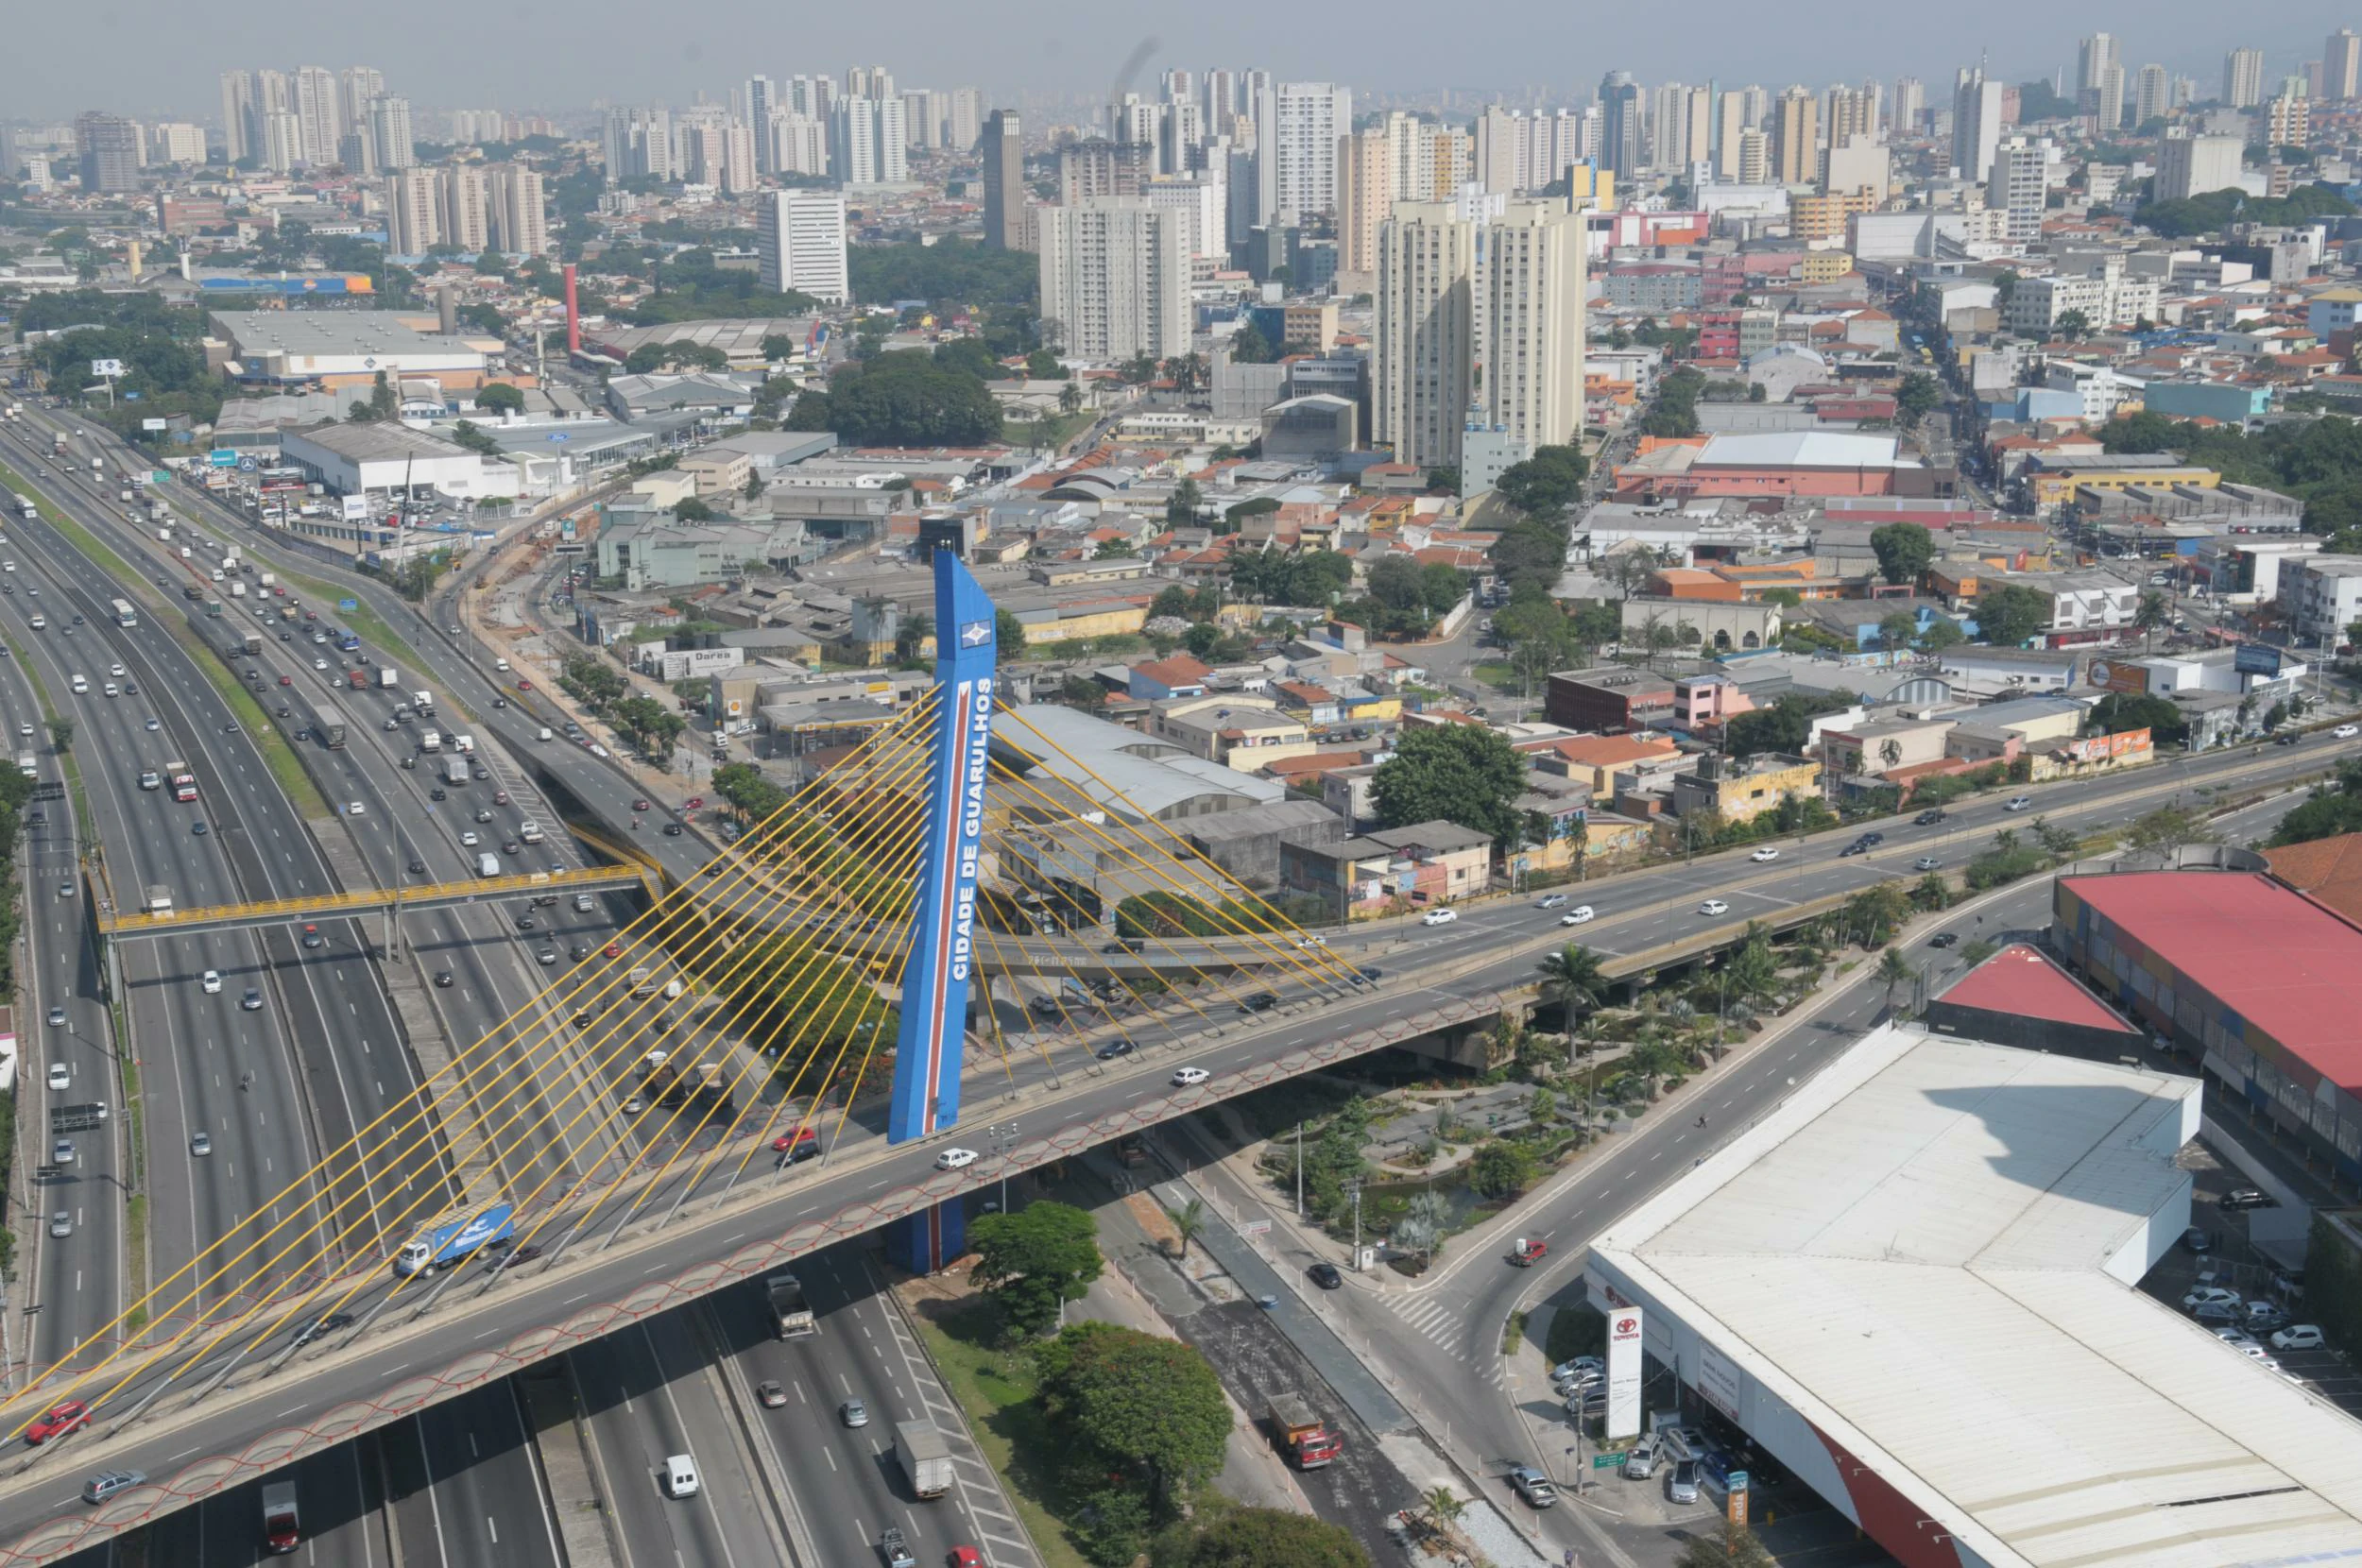 Plano de Saúde Empresarial em Guarulhos